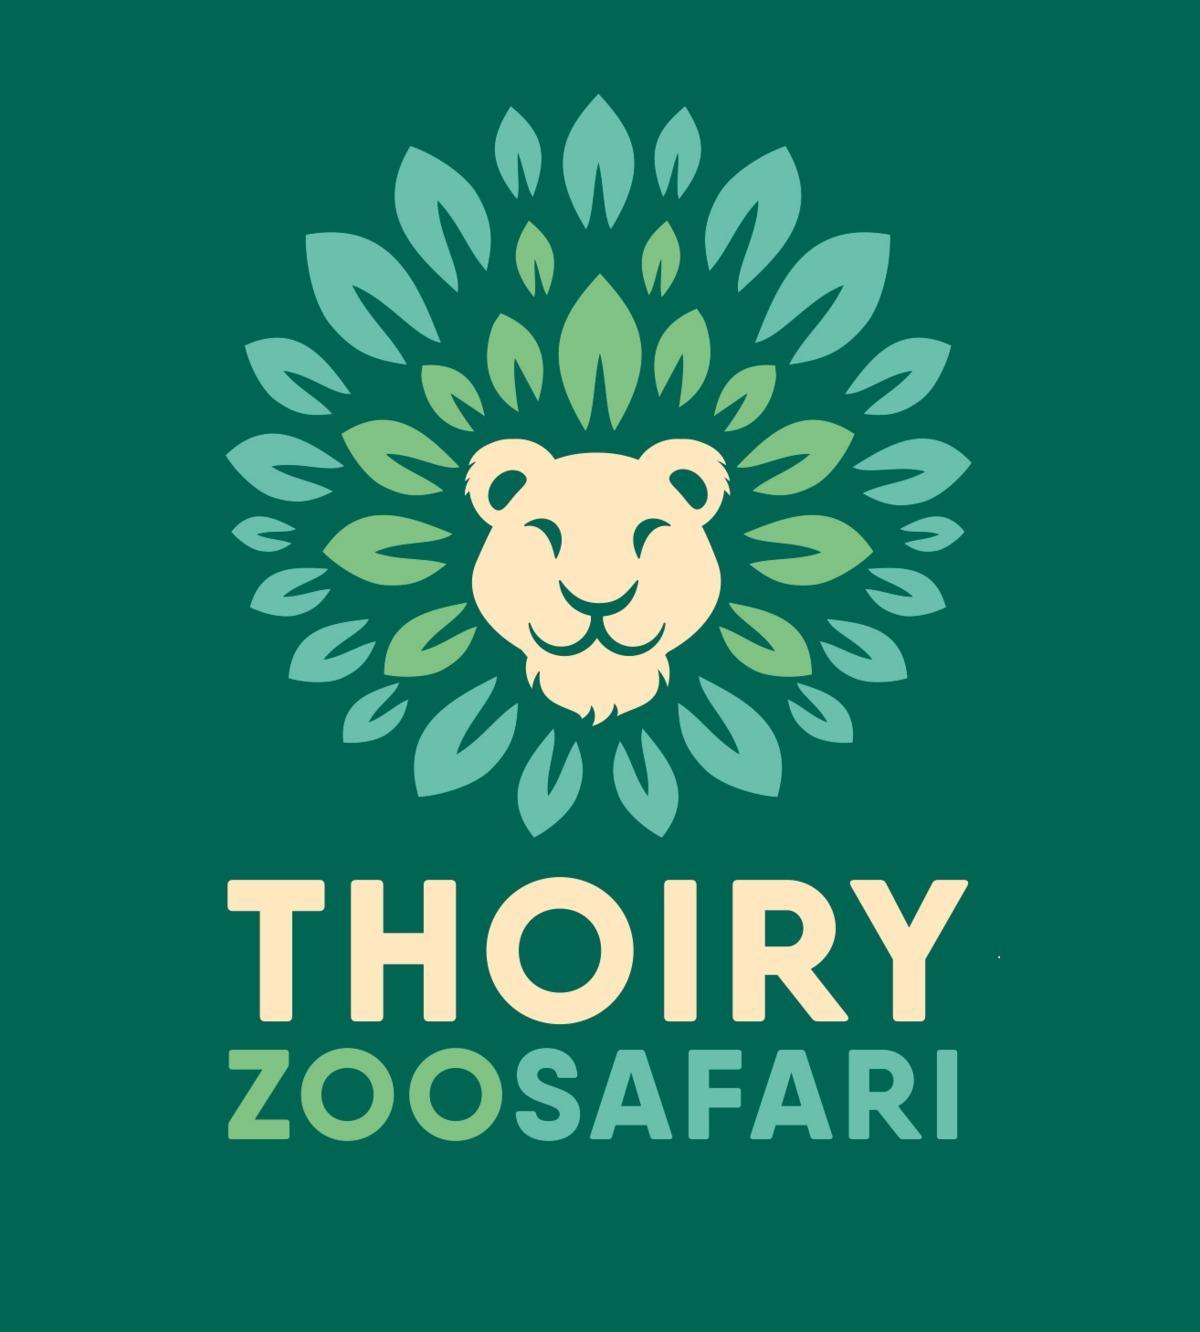 Le Zoo de Thoiry se chauffe grâce à ses propres déchets